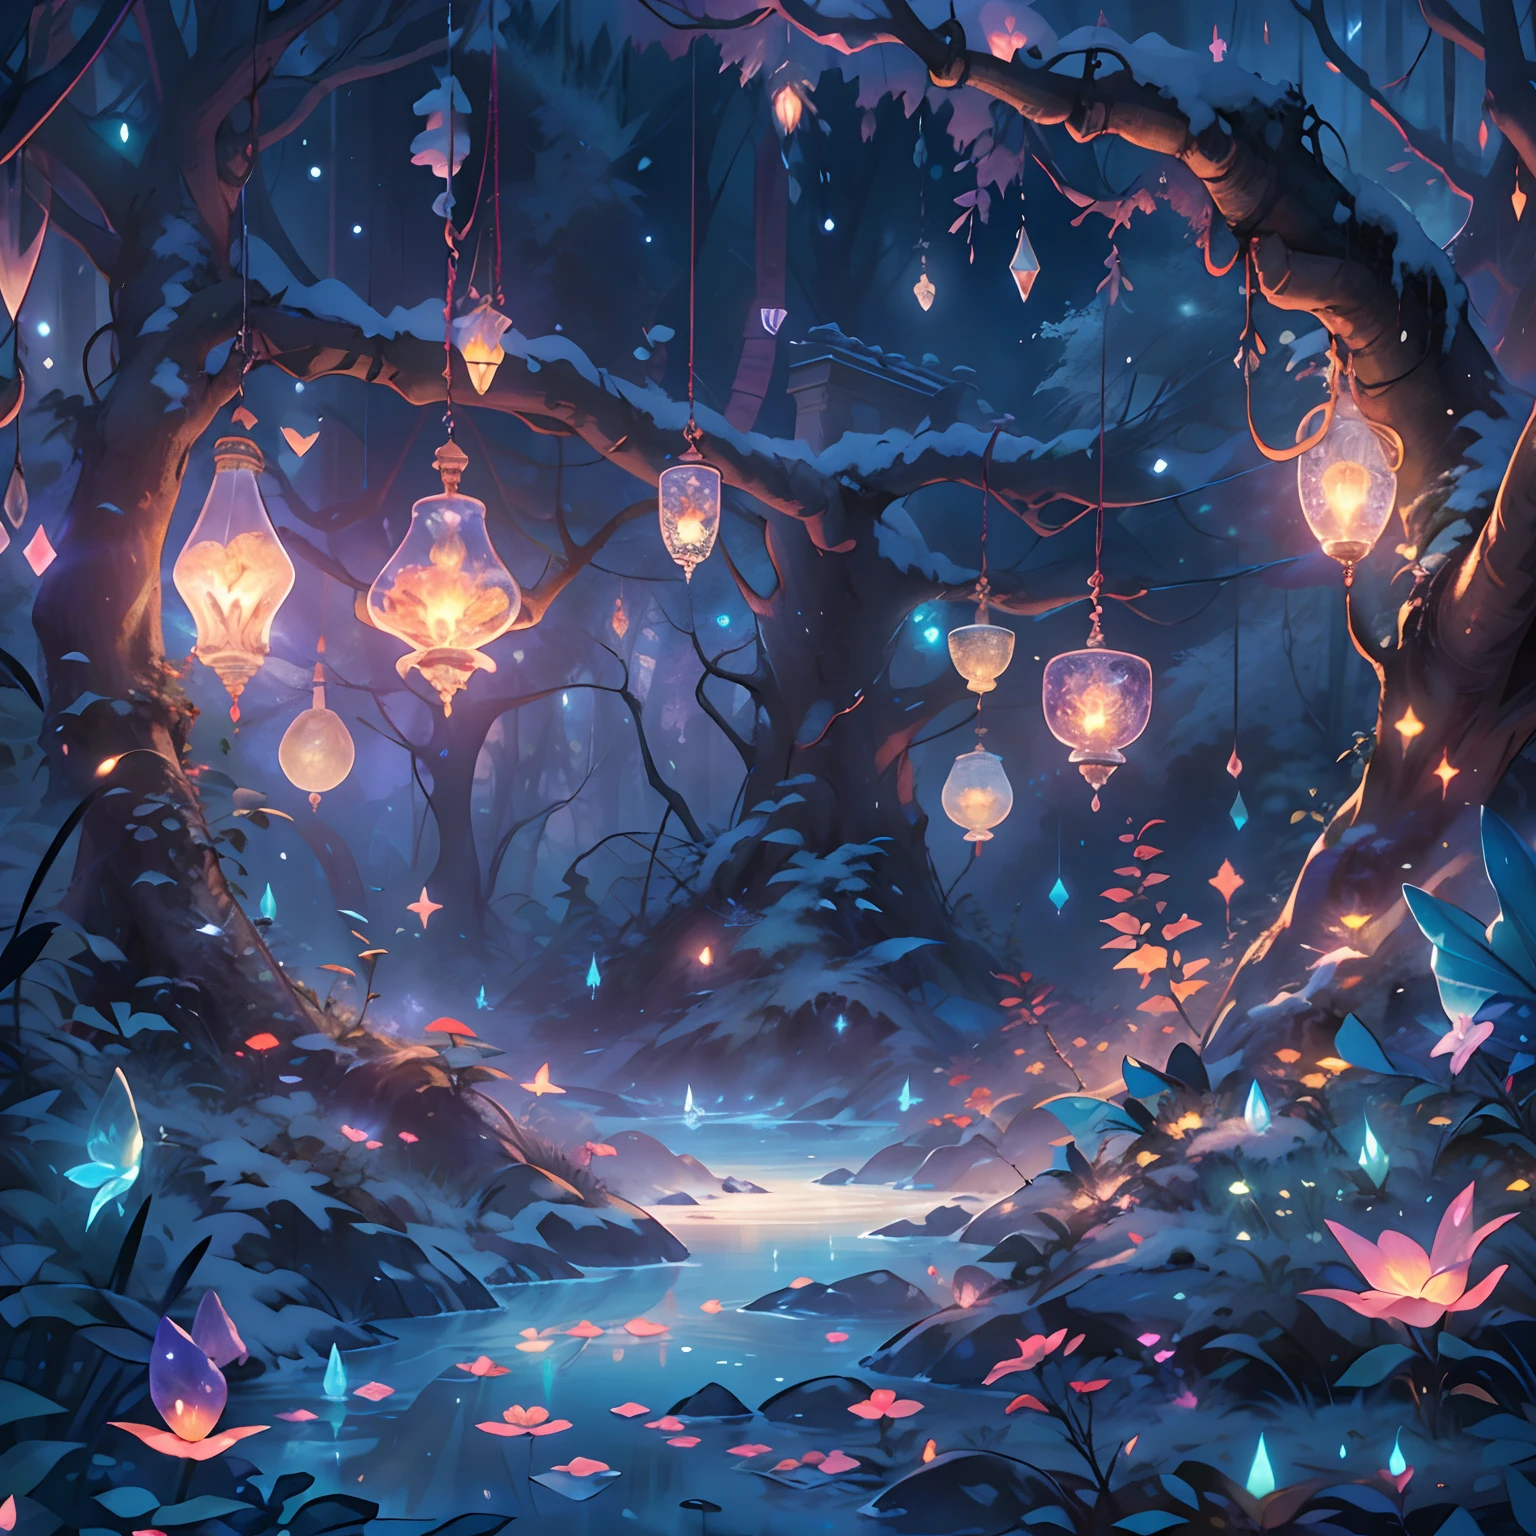 夢幻般的冰雪叢林，許多散落的水晶樹、闪闪发光的紫水晶照亮了冰雪、閃耀在中心，美麗的透明花朵, 透明彩色蝴蝶, 魔杖在風中飄揚､水晶闪耀着星光，金魔杖，透明羽毛，奇特的、紅蜘蛛、清潔、微光、希内尼菲卡、蔥蘢、光、发光，魔法圖片,精緻的樹葉和樹枝被螢火蟲包圍（自然元素），（丛林主题），（叶子），（樹枝），（萤火虫），（粒子效果），傑作, 超詳細, 史詩作品, 最好的品質, 8K，史詩浪漫幻想數位藝術，史詩般的童話奇幻數位藝術，神話奇幻，傑作，高品質，8K，超高清解析度，詳細細部圖，現實地，很現實，電影燈光,获奖照片,色彩豐富，超寫實寫實質感，戏剧灯光